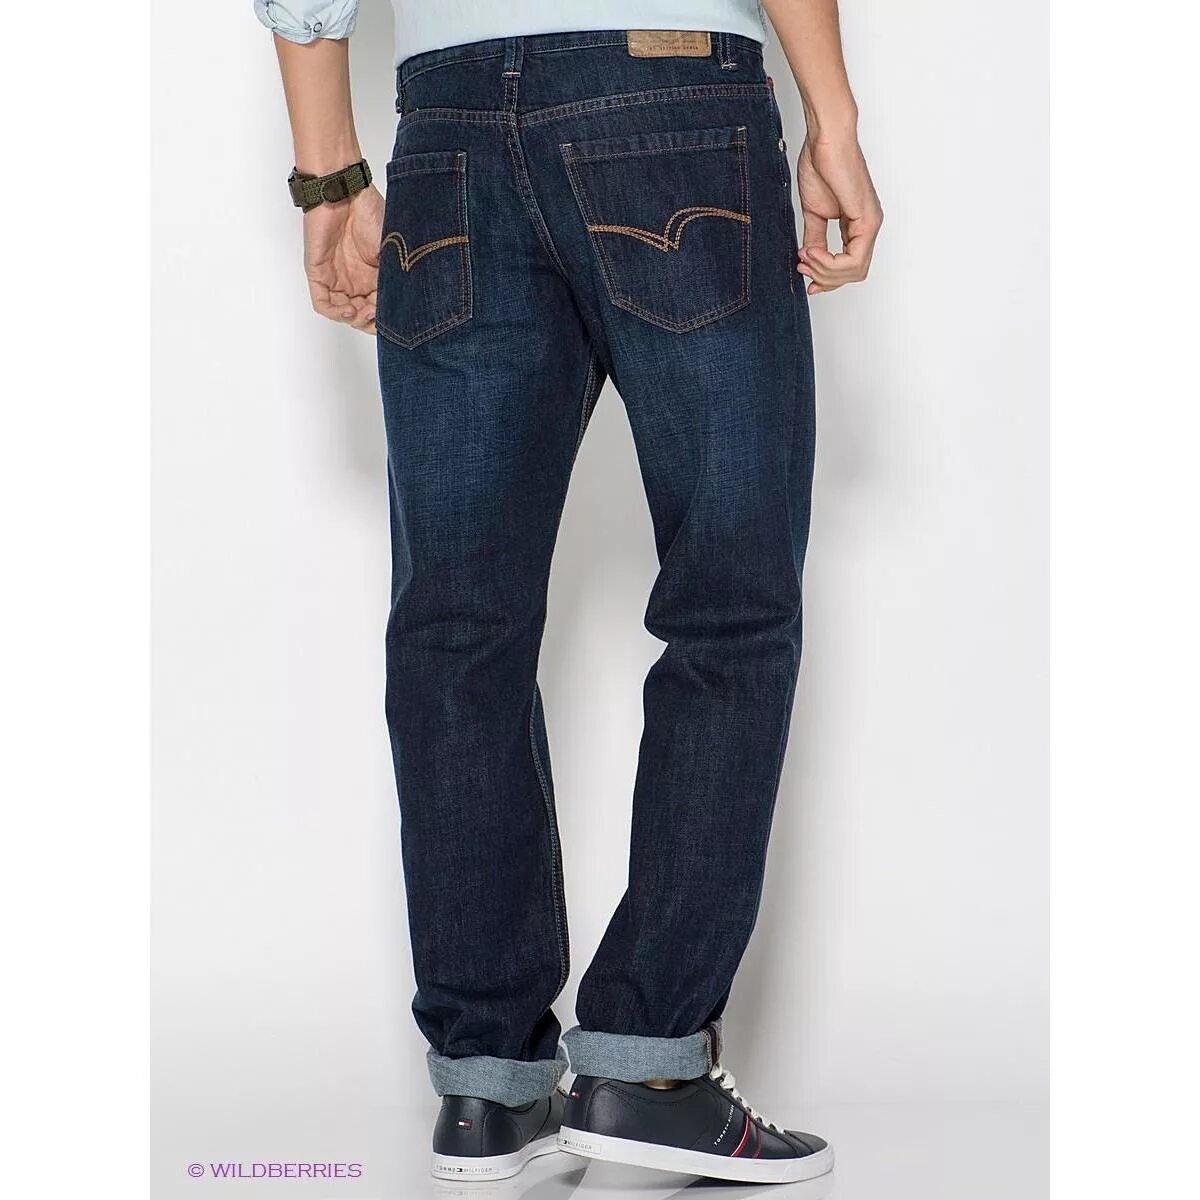 Джинсы мужские больших размеров купить в москве. Lee 230 Jeans. Lee Delta джинсы мужские. Джинсы Lee мужские классические. Джинсы Lee мужские широкие.